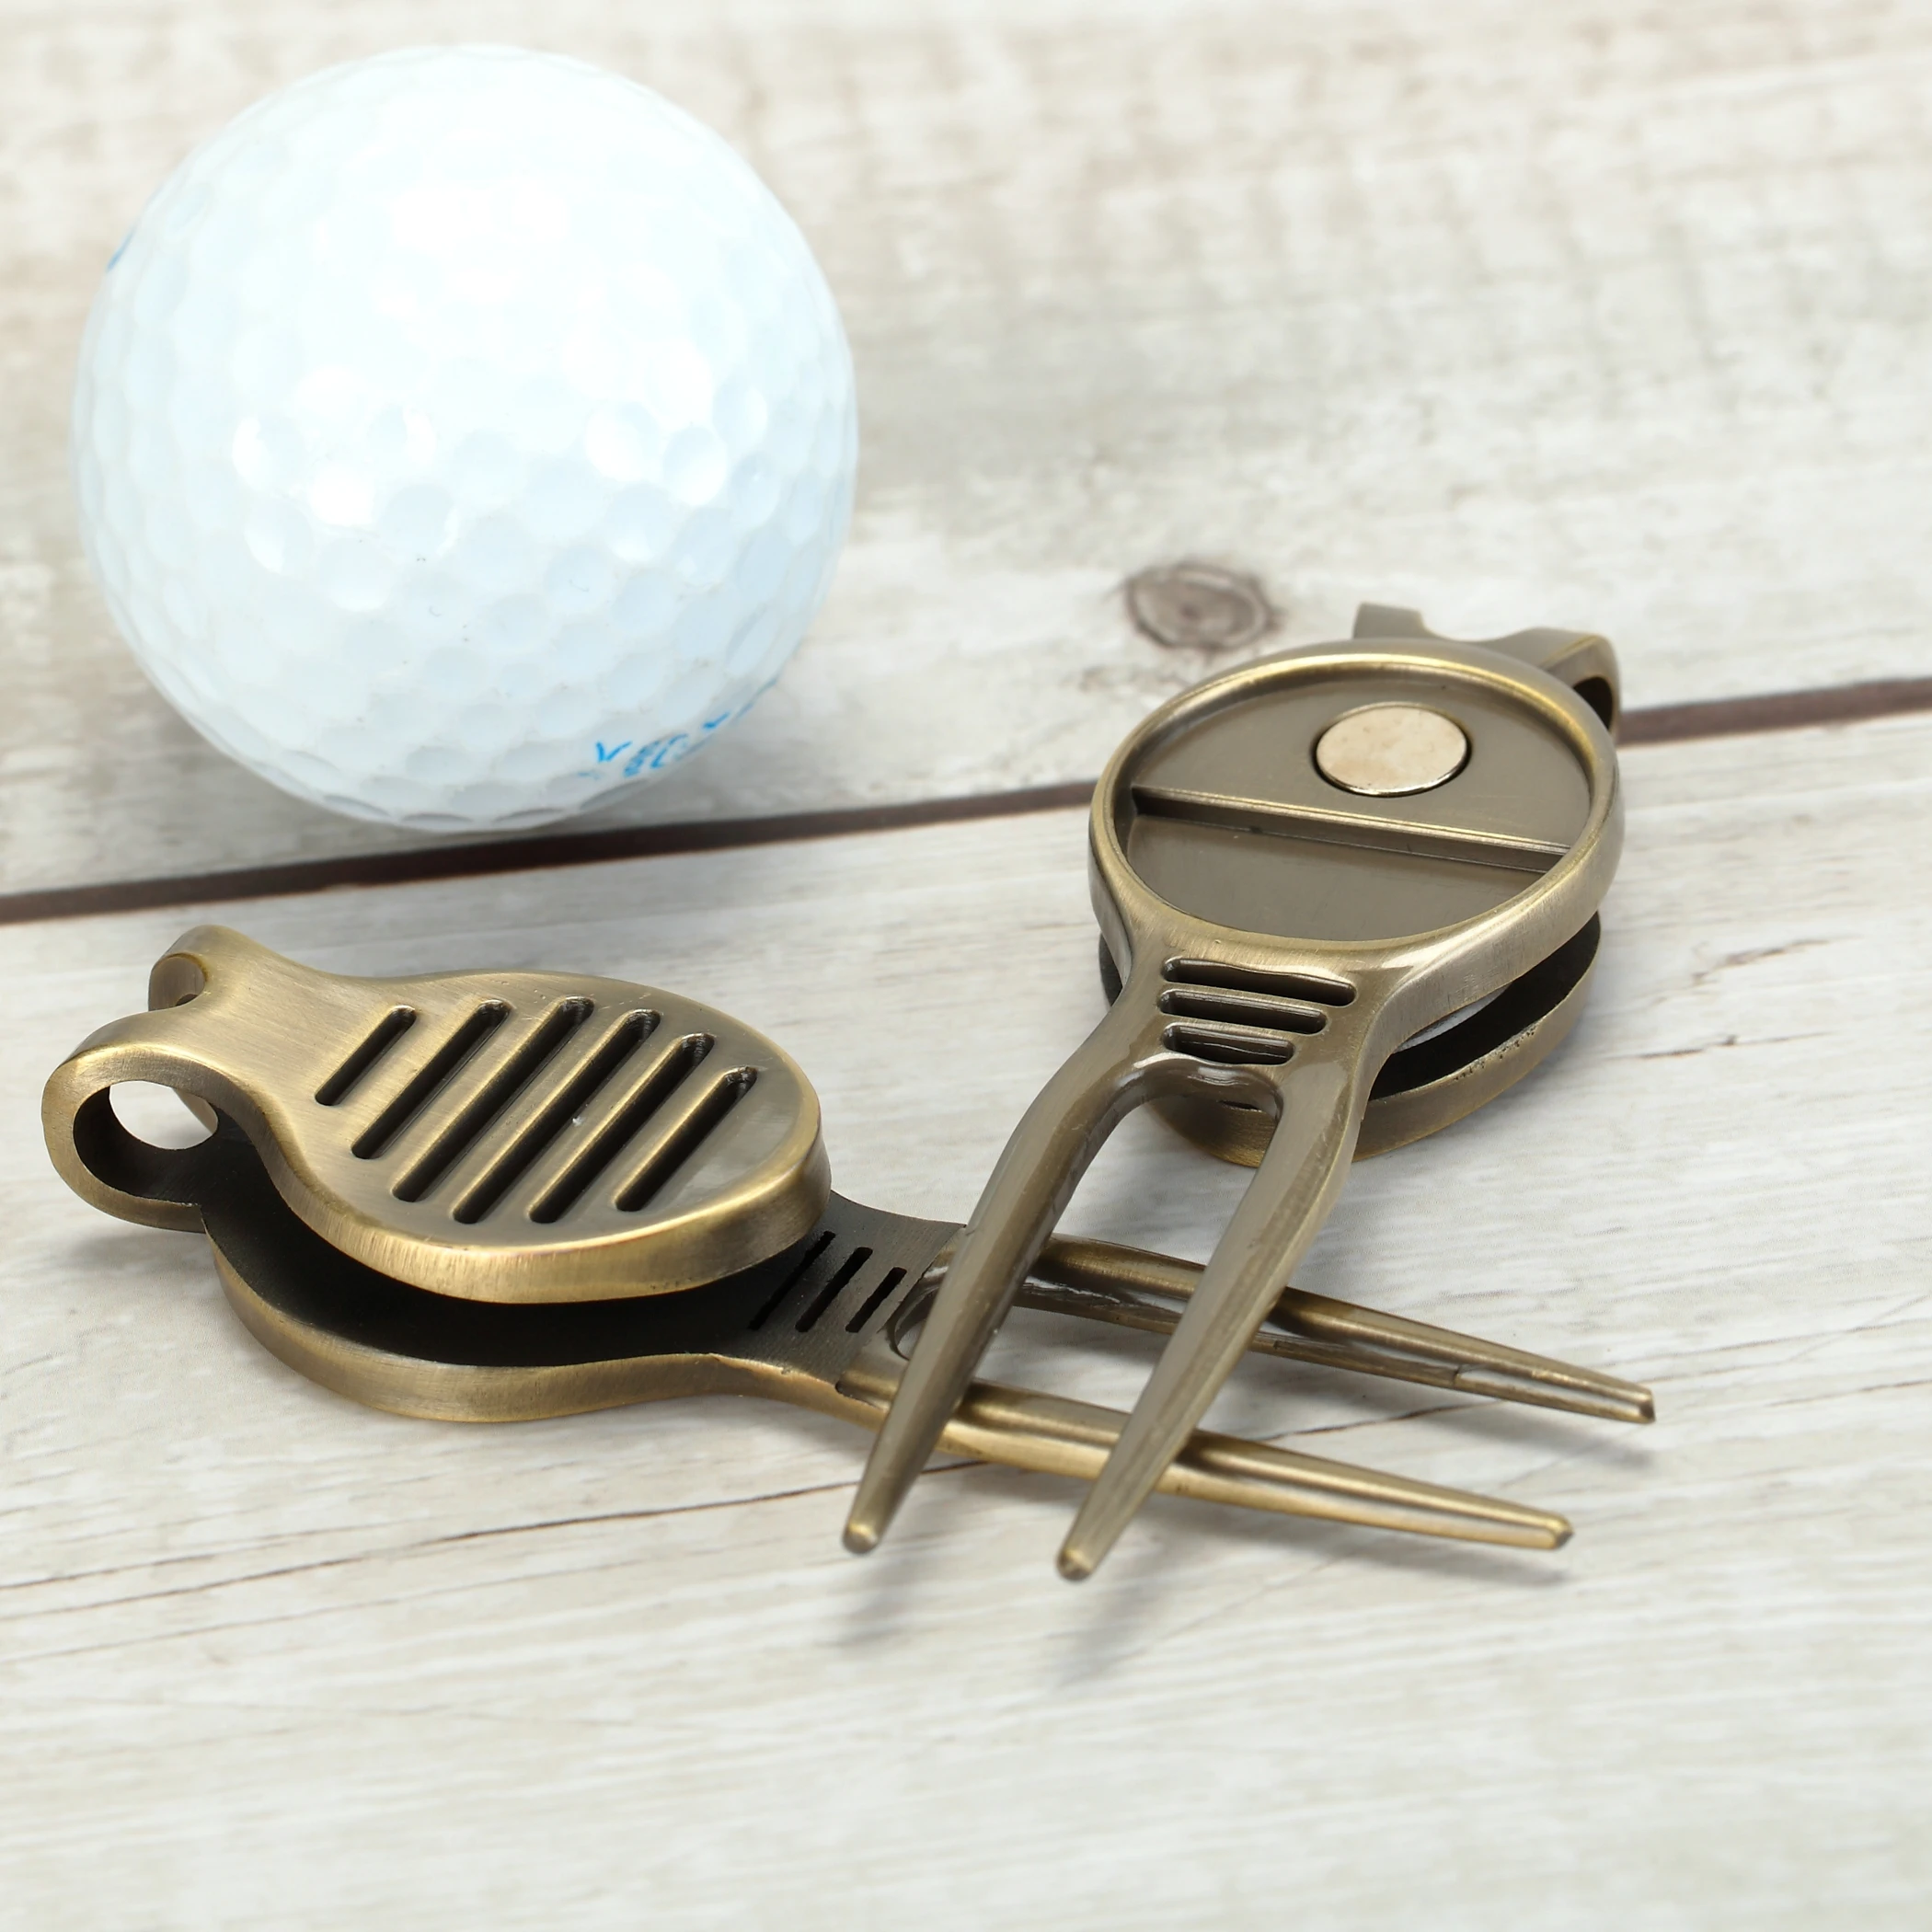 Marqueurs de balles et outils de divot de golf